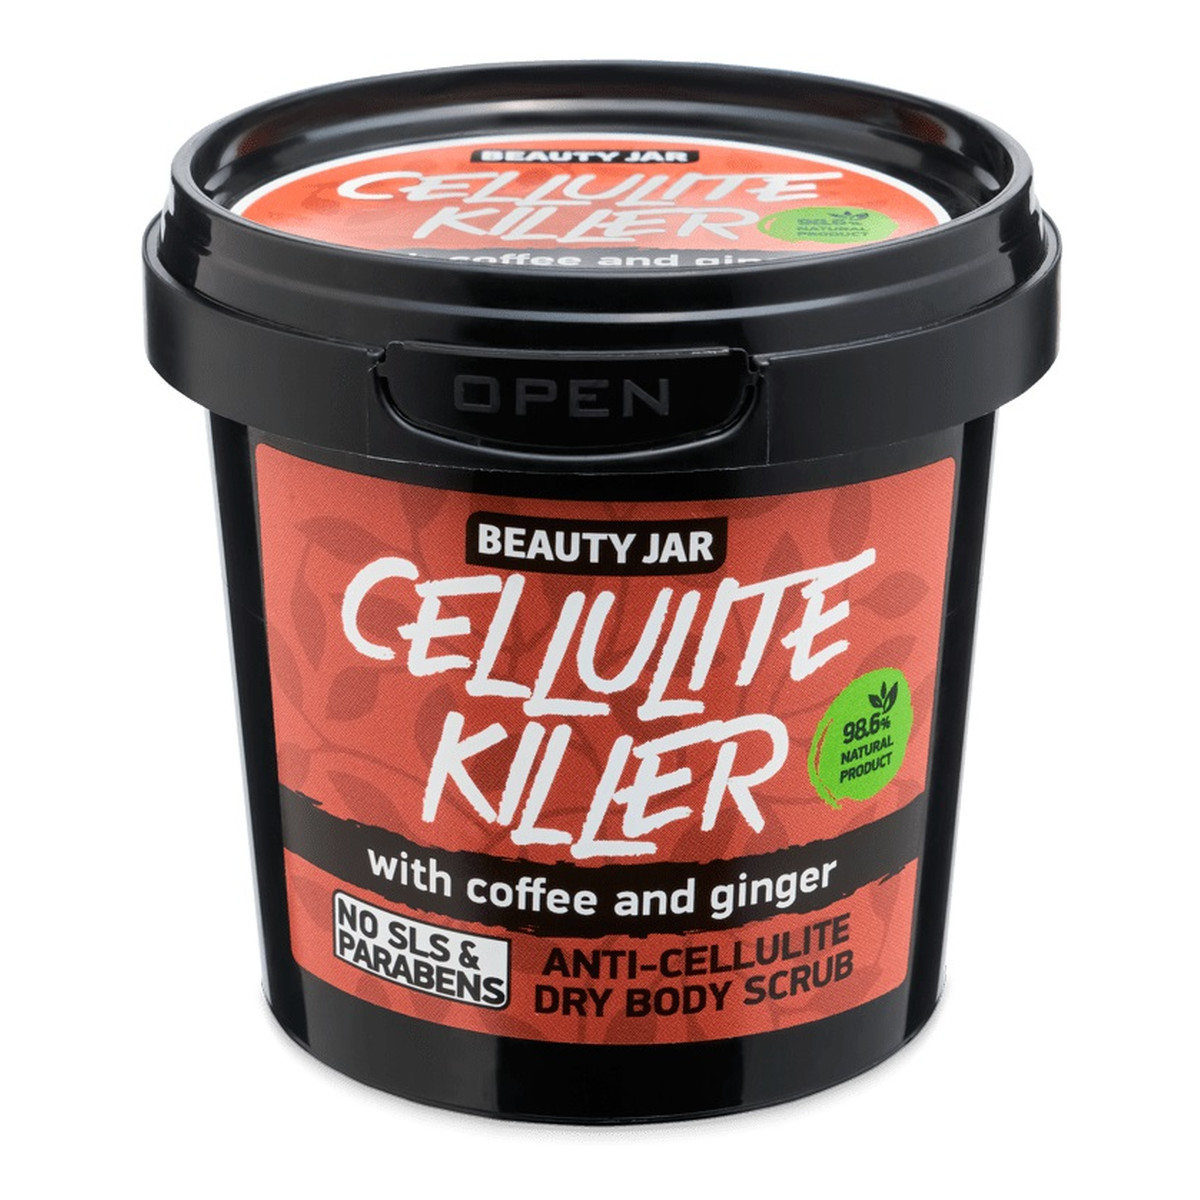 Beauty Jar Cellulite killer antycellulitowy suchy peeling do ciała z kawą i imbirem 150g